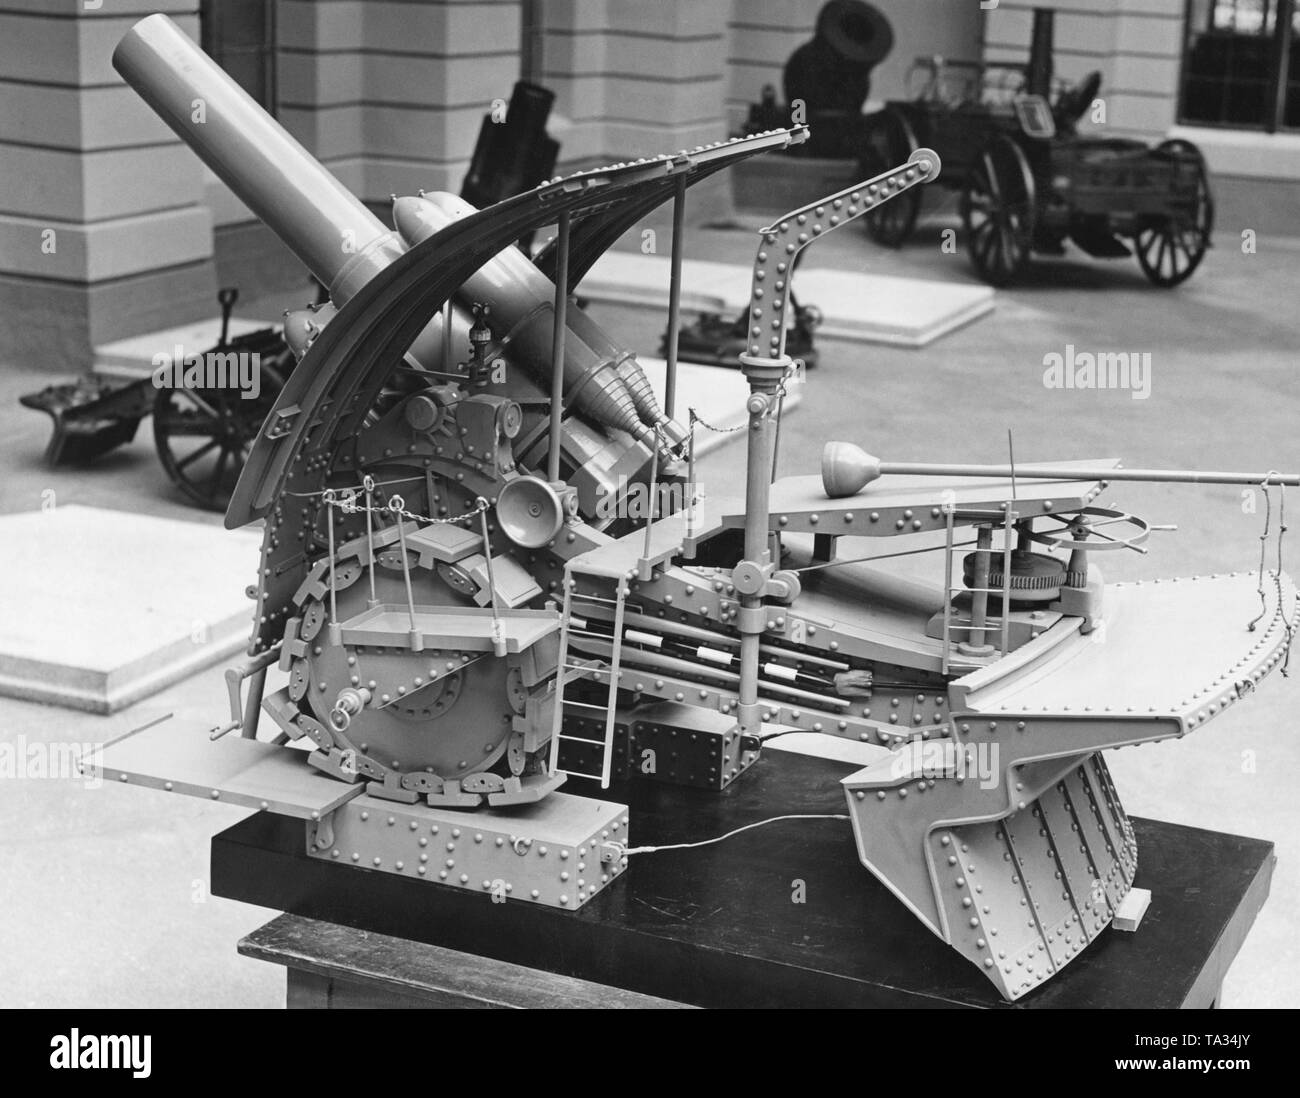 Foto ein Modell der Mörtel cannon 'Dicke Bertha' der Krupp Sorge aus dem Ersten Weltkrieg in der Ausstellung 'Die Front' ('Vorne') im Zeughaus in Berlin. Die 42 cm Haubitze Kaliber 12 L/16" oder "Gamma" war eigentlich als Naval gun geplant, sondern war auch im Ersten Weltkrieg an der Front eingesetzt. Der Transport der 150 Kilo gun benötigt 20 Eisenbahnwaggons und es gab zusätzliche Gleise an der Vorderseite speziell für diesen Zweck. Stockfoto